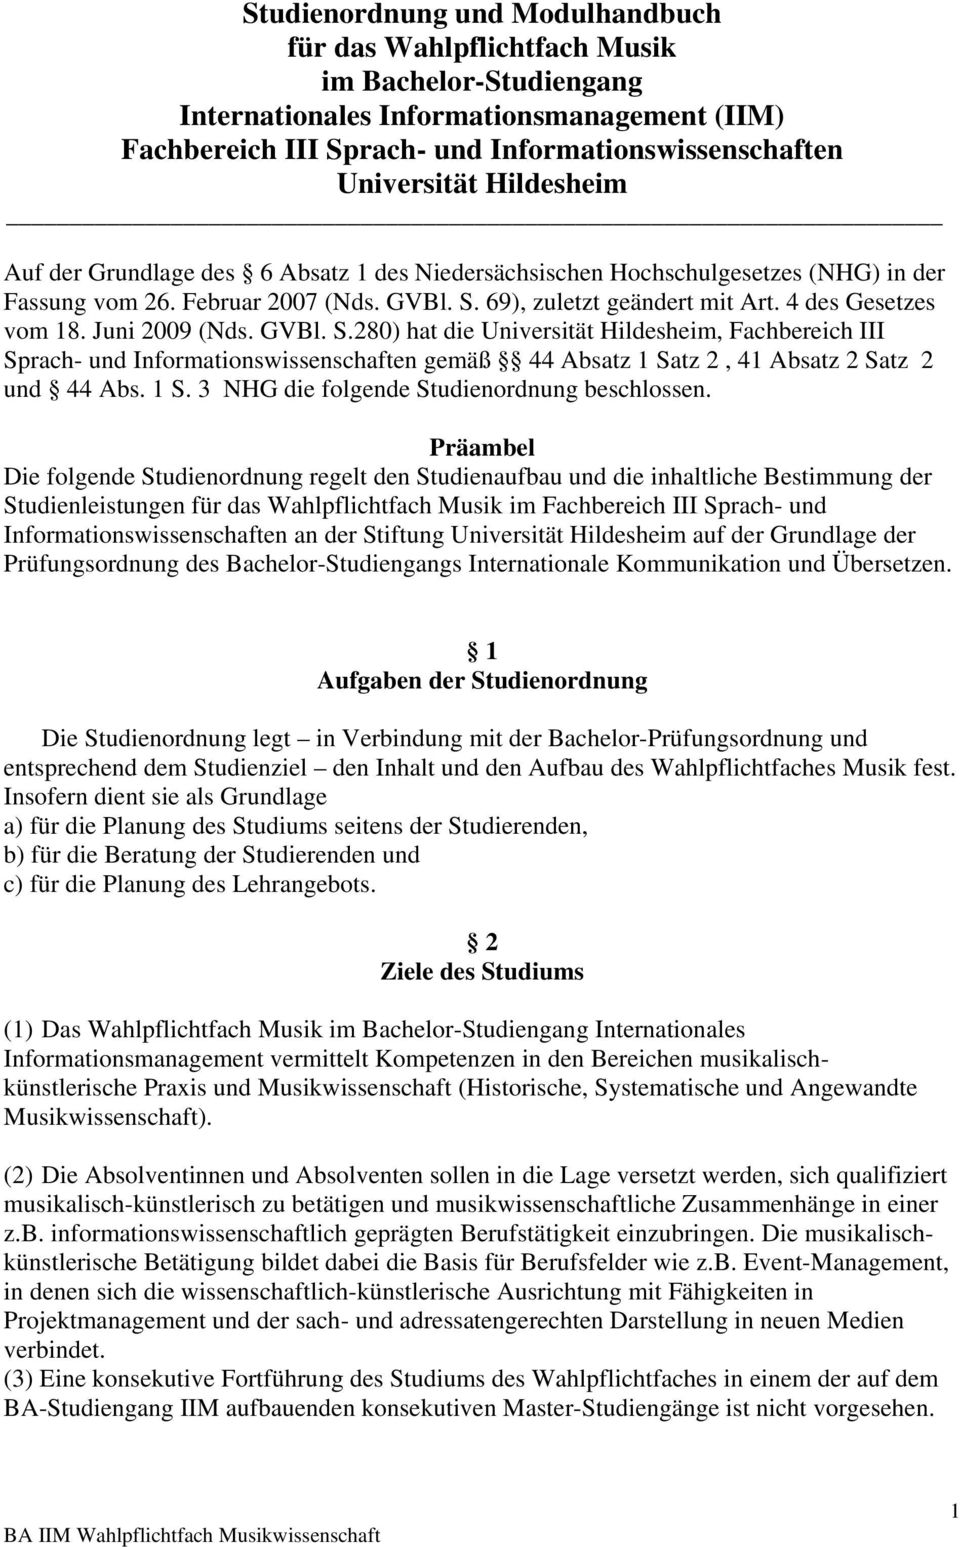 Juni 2009 (Nds. GVBl. S.280) hat die Universität Hildesheim, Fachbereich III Sprach- und Informationswissenschaften gemäß 44 Absatz 1 Satz 2, 41 Absatz 2 Satz 2 und 44 Abs. 1 S. 3 NHG die folgende Studienordnung beschlossen.